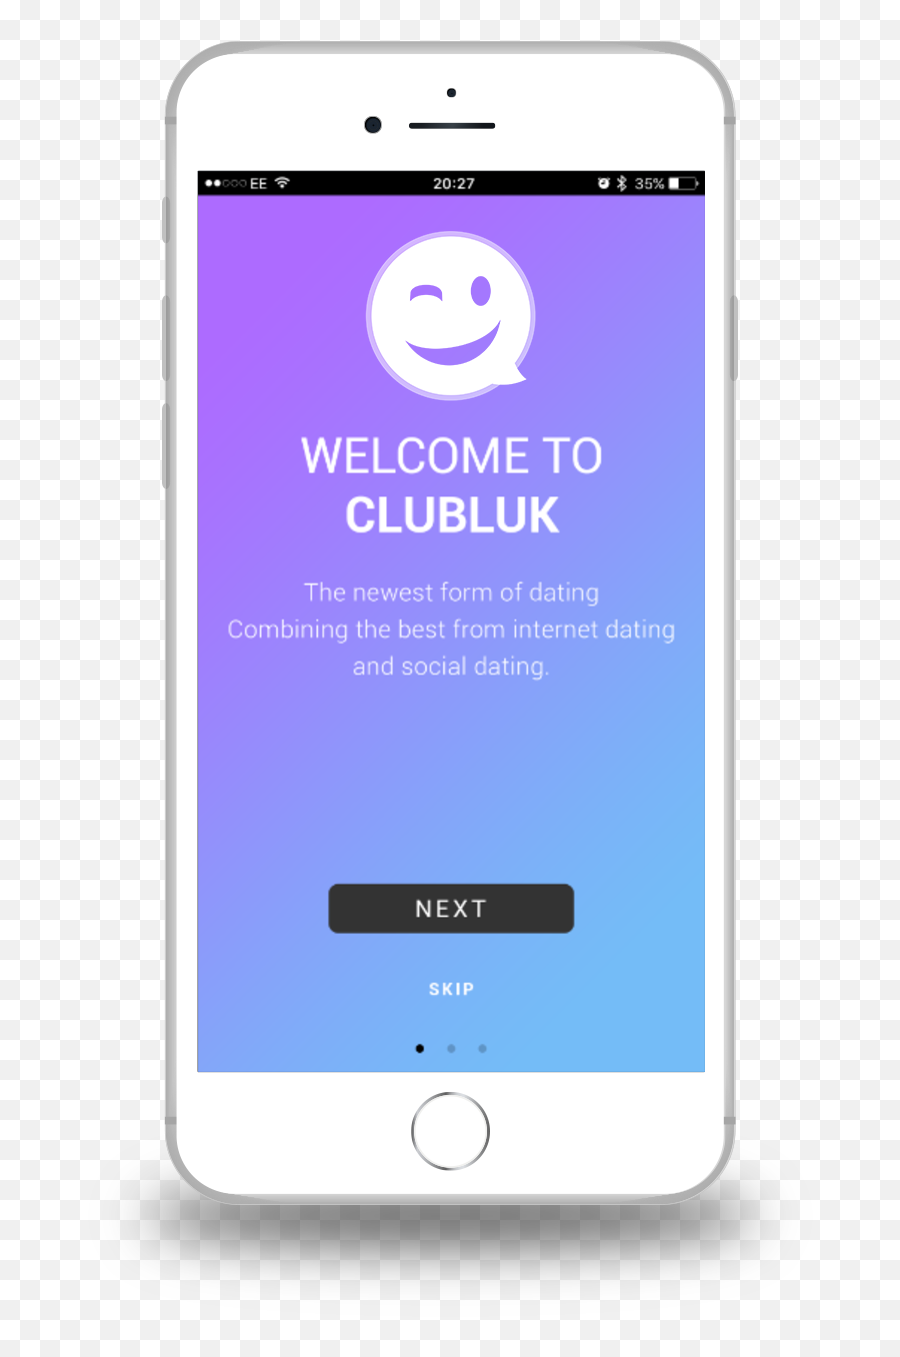 Clubluk - Iphone Emoji,E.e Emoticon